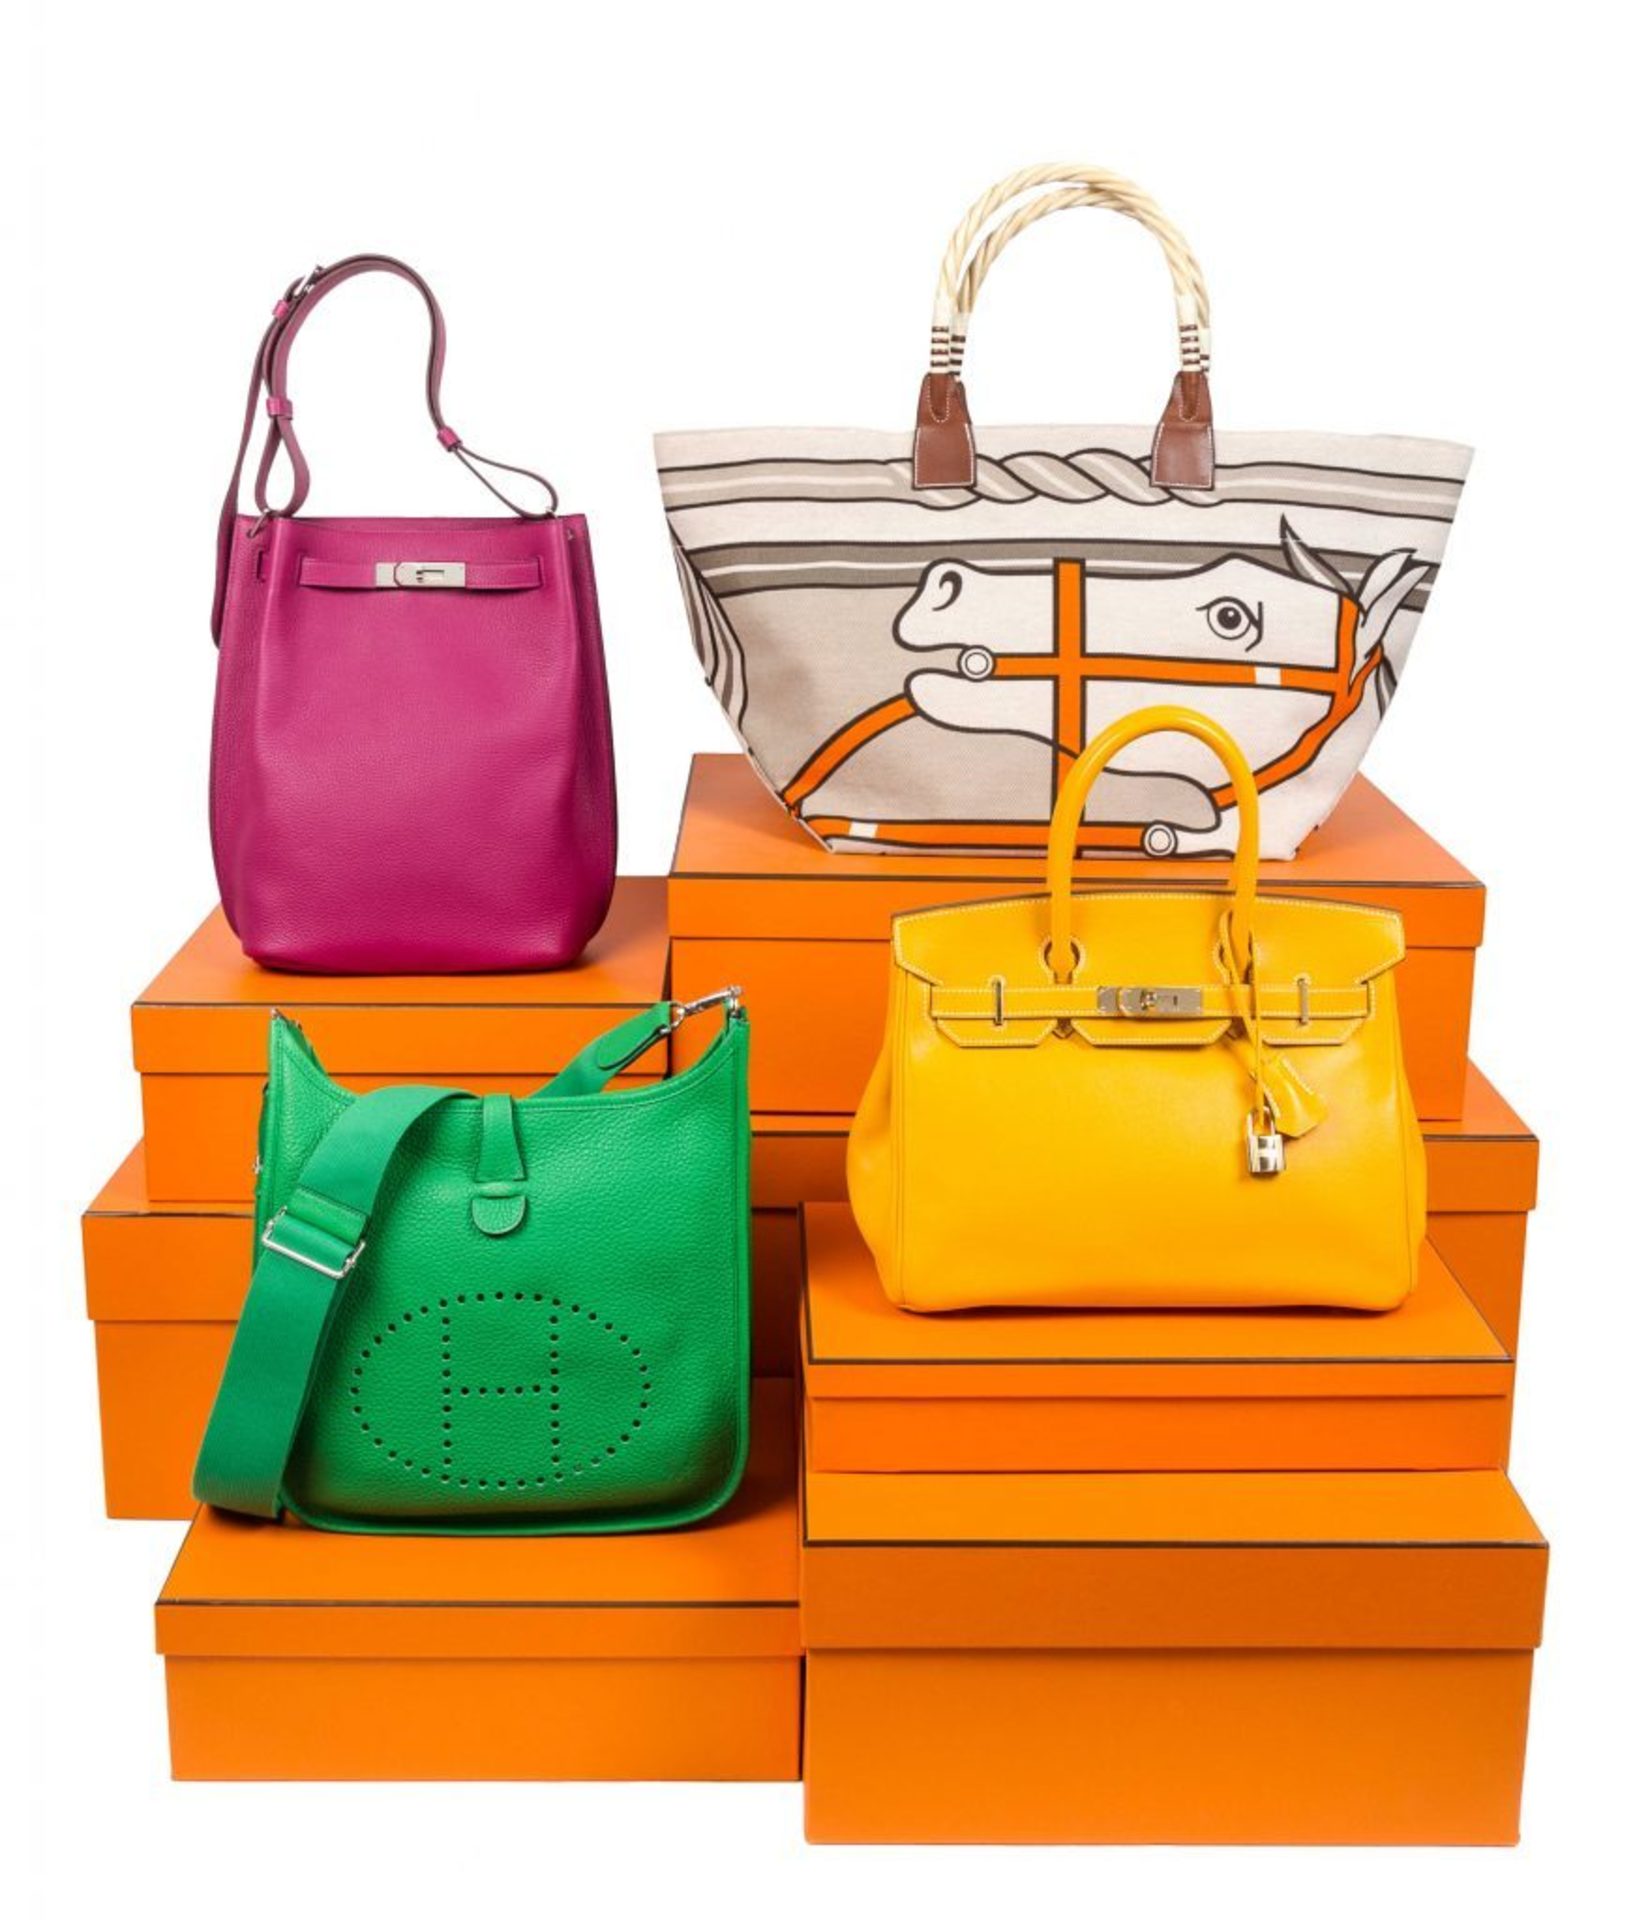 Buy Hermes Hermes Kelly bag female handbag painted color matching